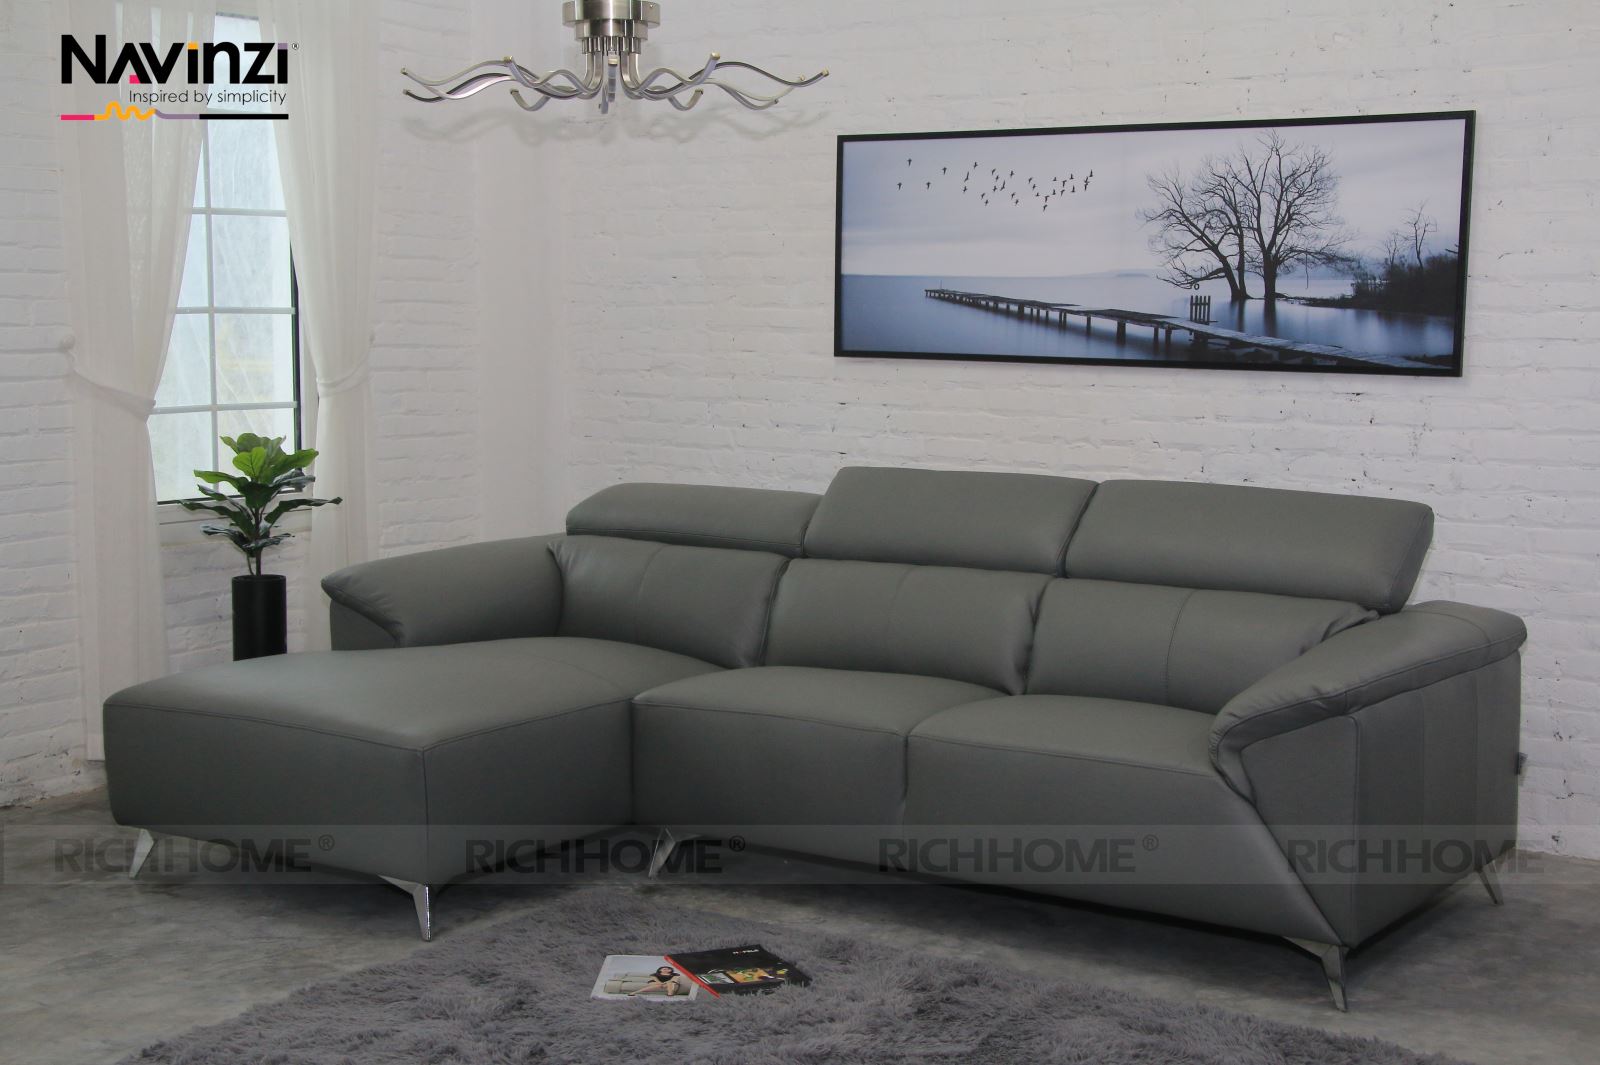 BST sofa cao cấp phòng khách mới nhất 2020 - Ảnh 2